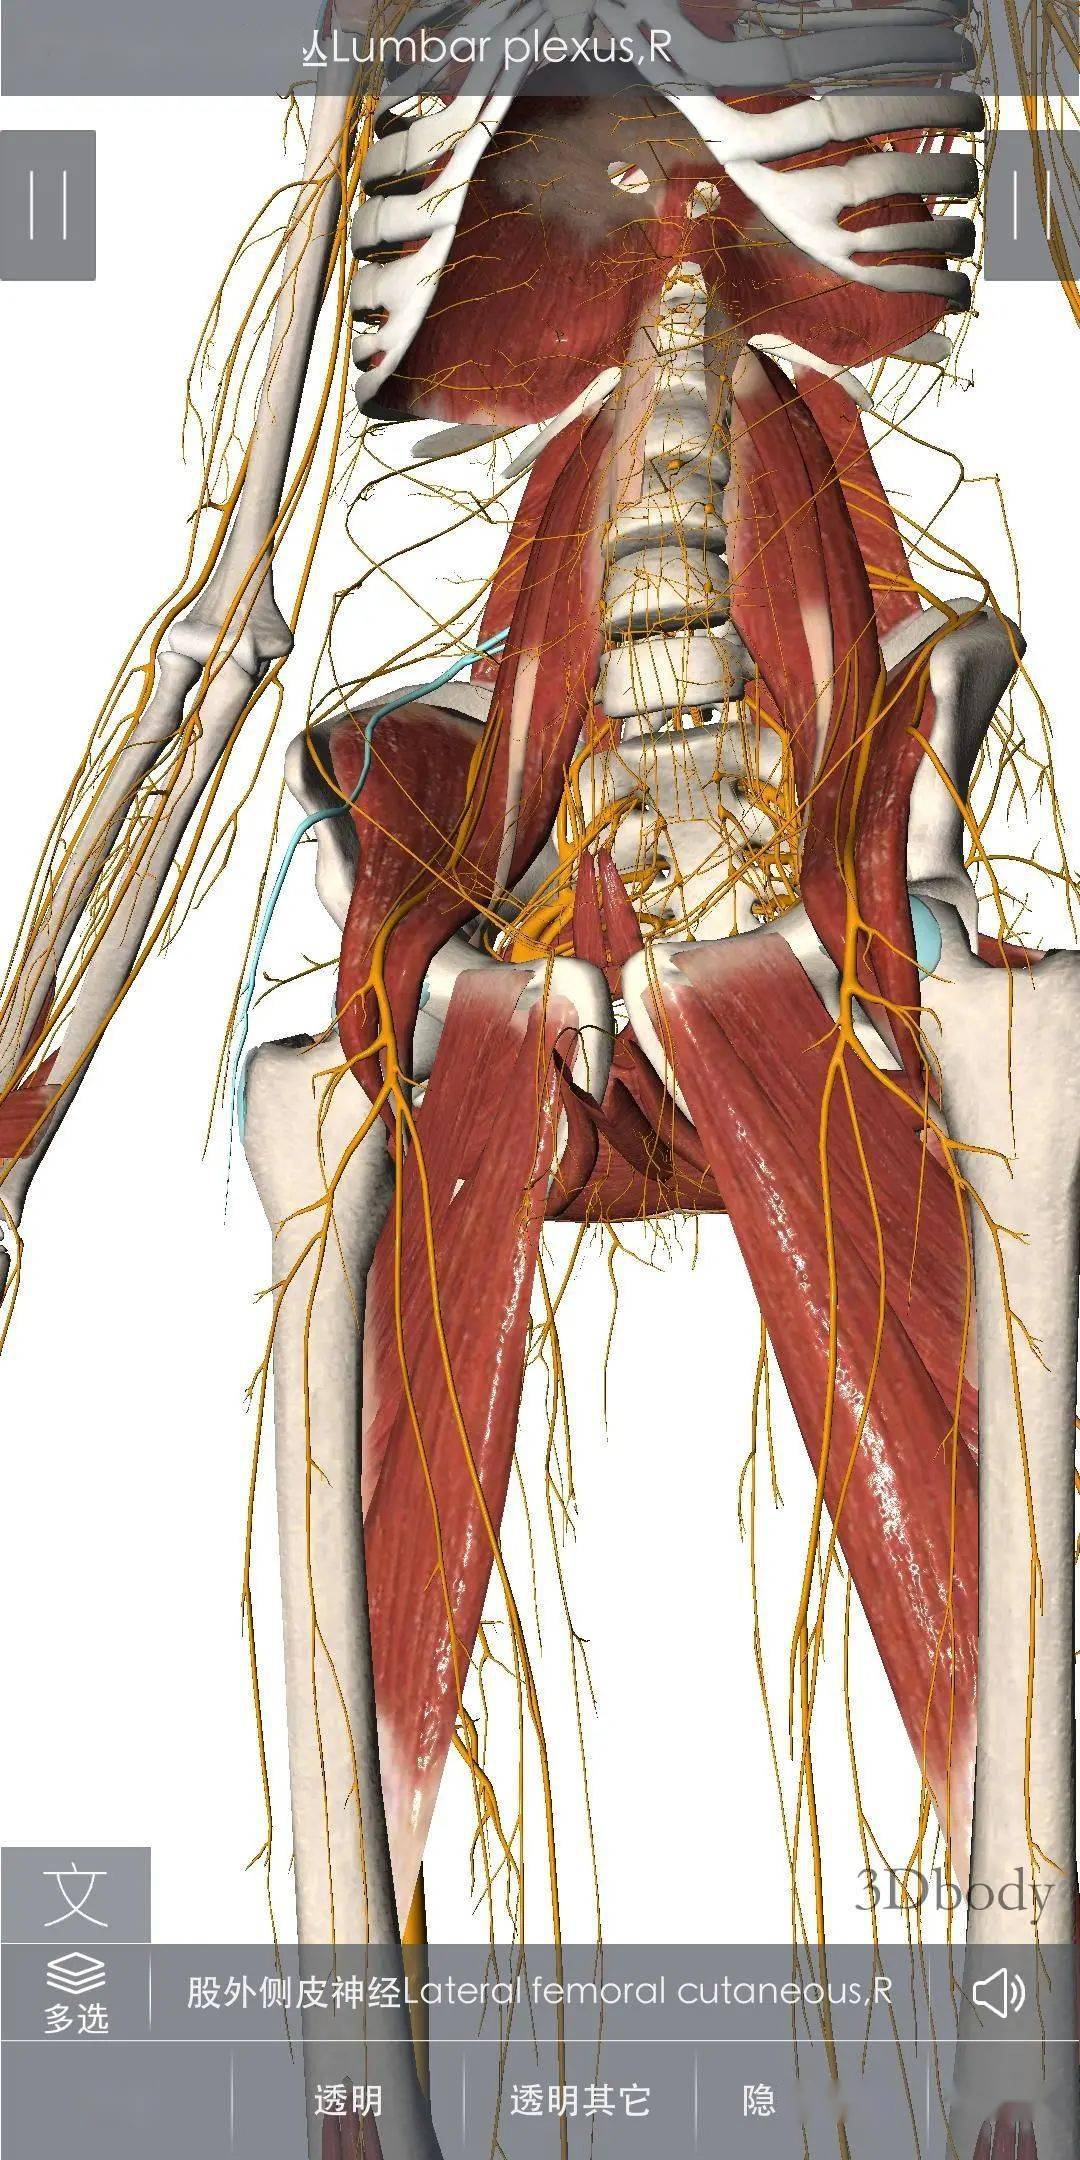 股外侧皮神经是单纯感觉神经,来自l2,l3神经前支后股,沿腰大肌外缘斜